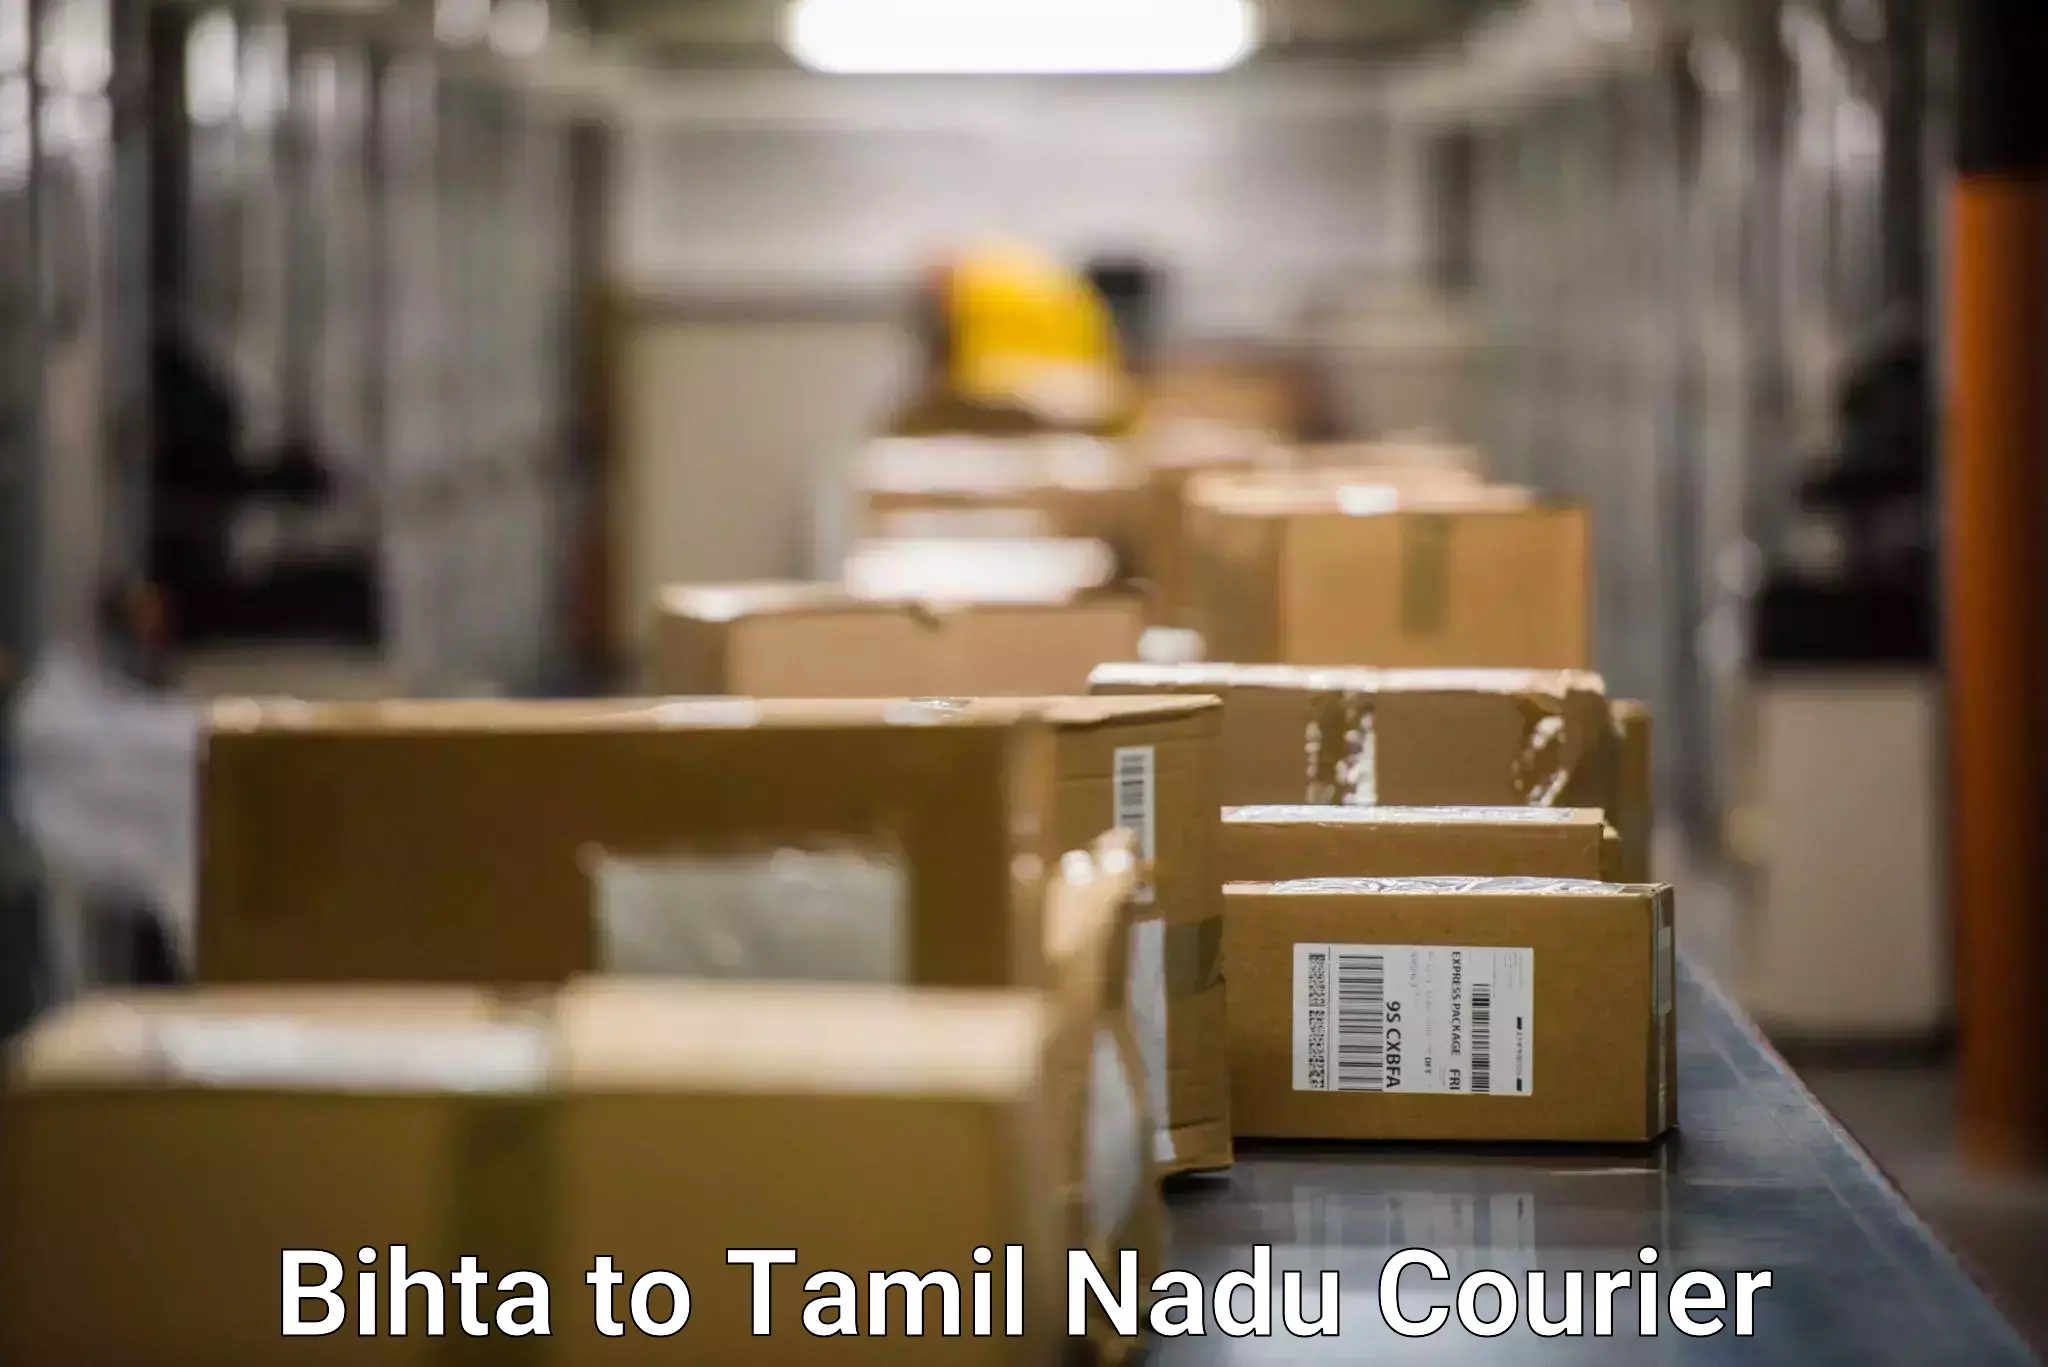 Next-day freight services Bihta to Tamil Nadu